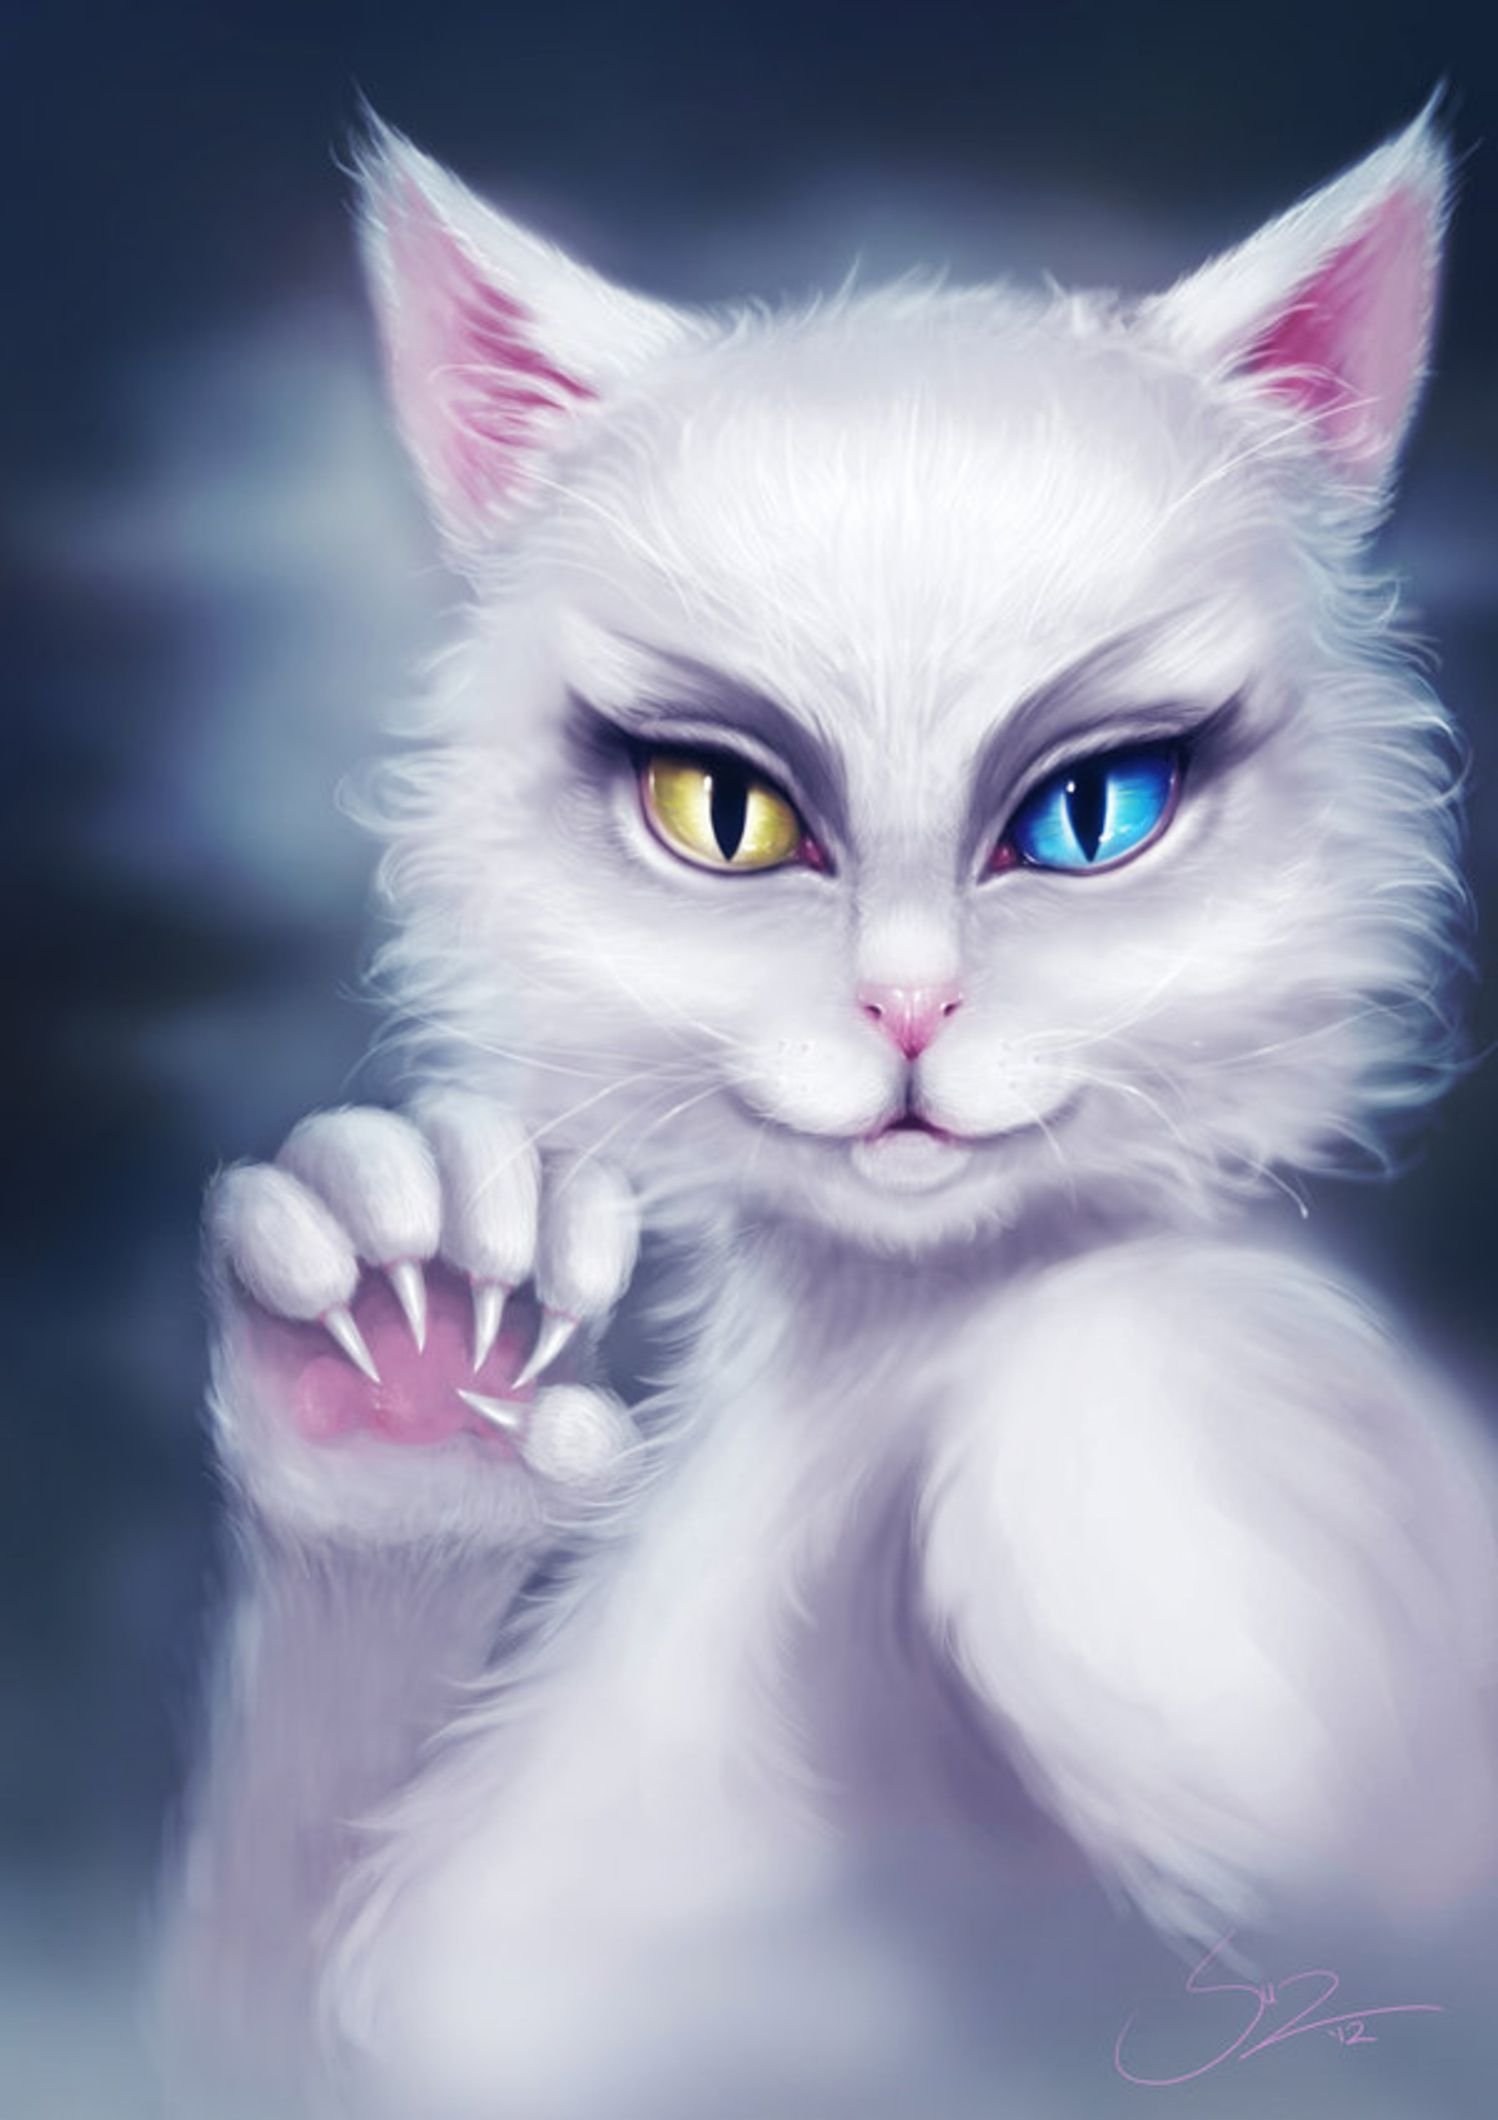 Аватары про животных | Картинки котов | Серый котик | пикселей | Аватарки на тему Девушка